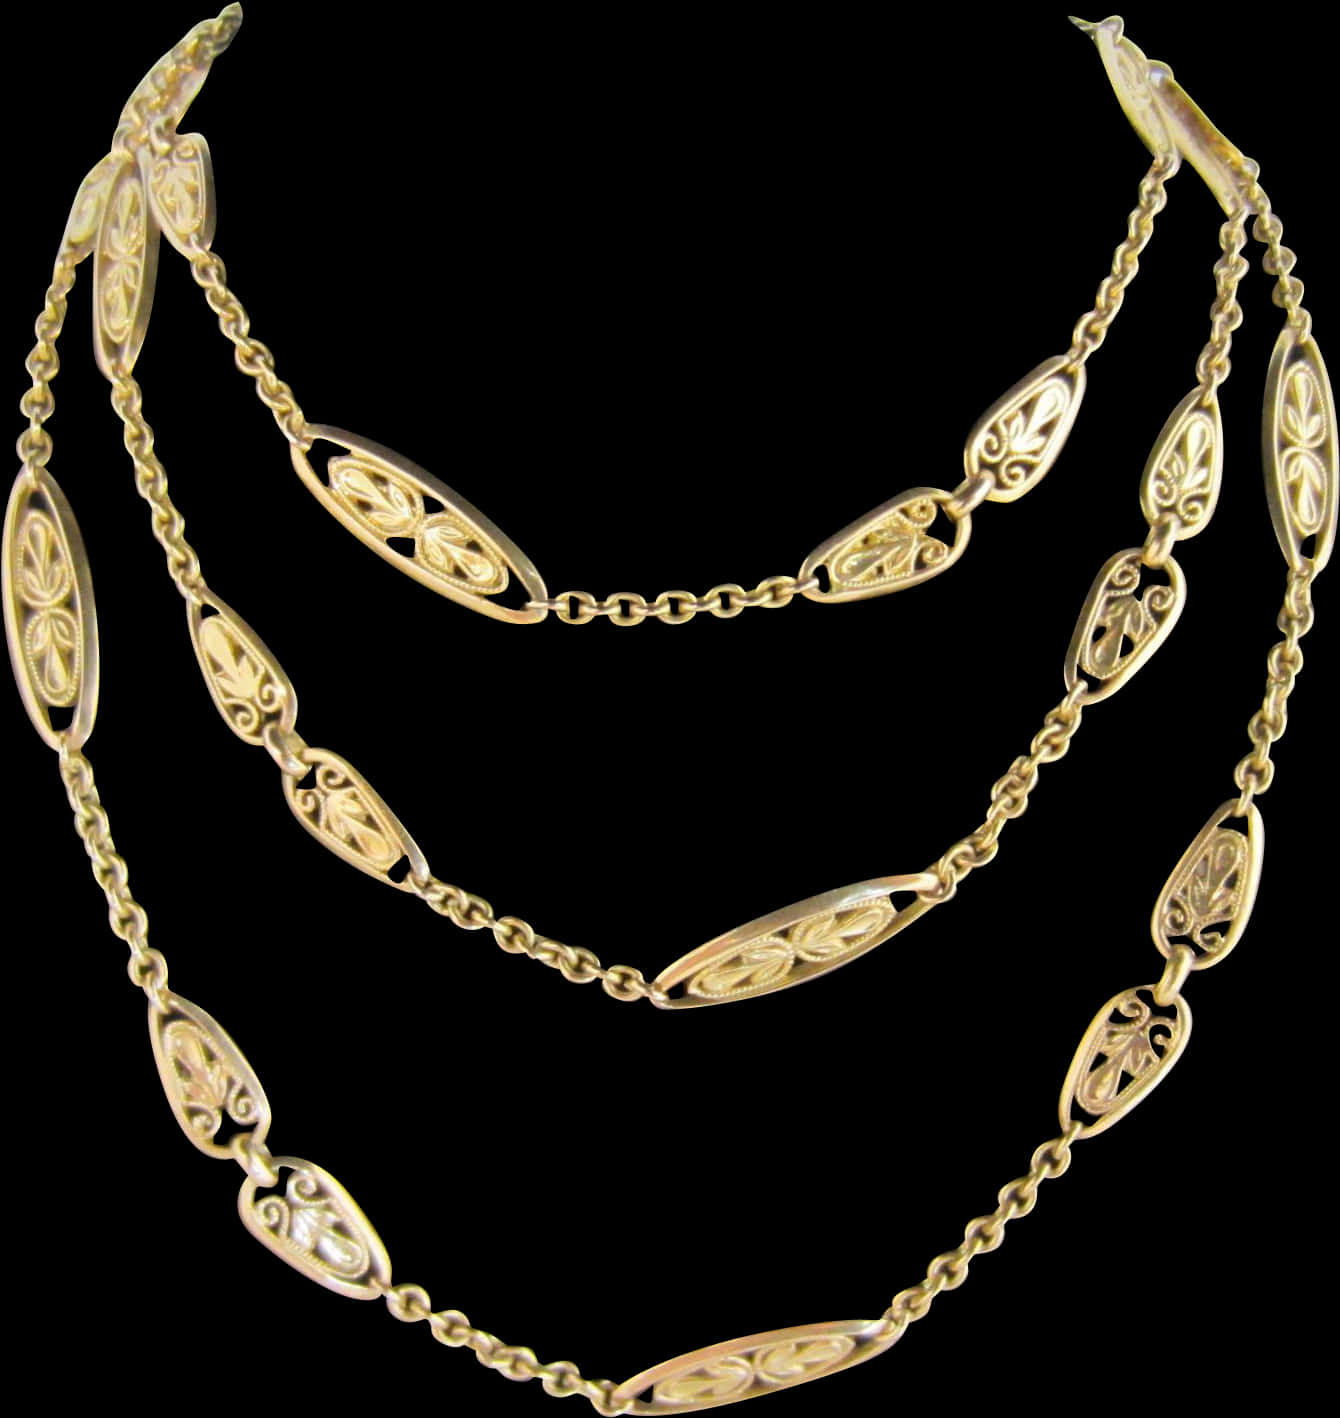 Elegant Gold Chain Design PNG image